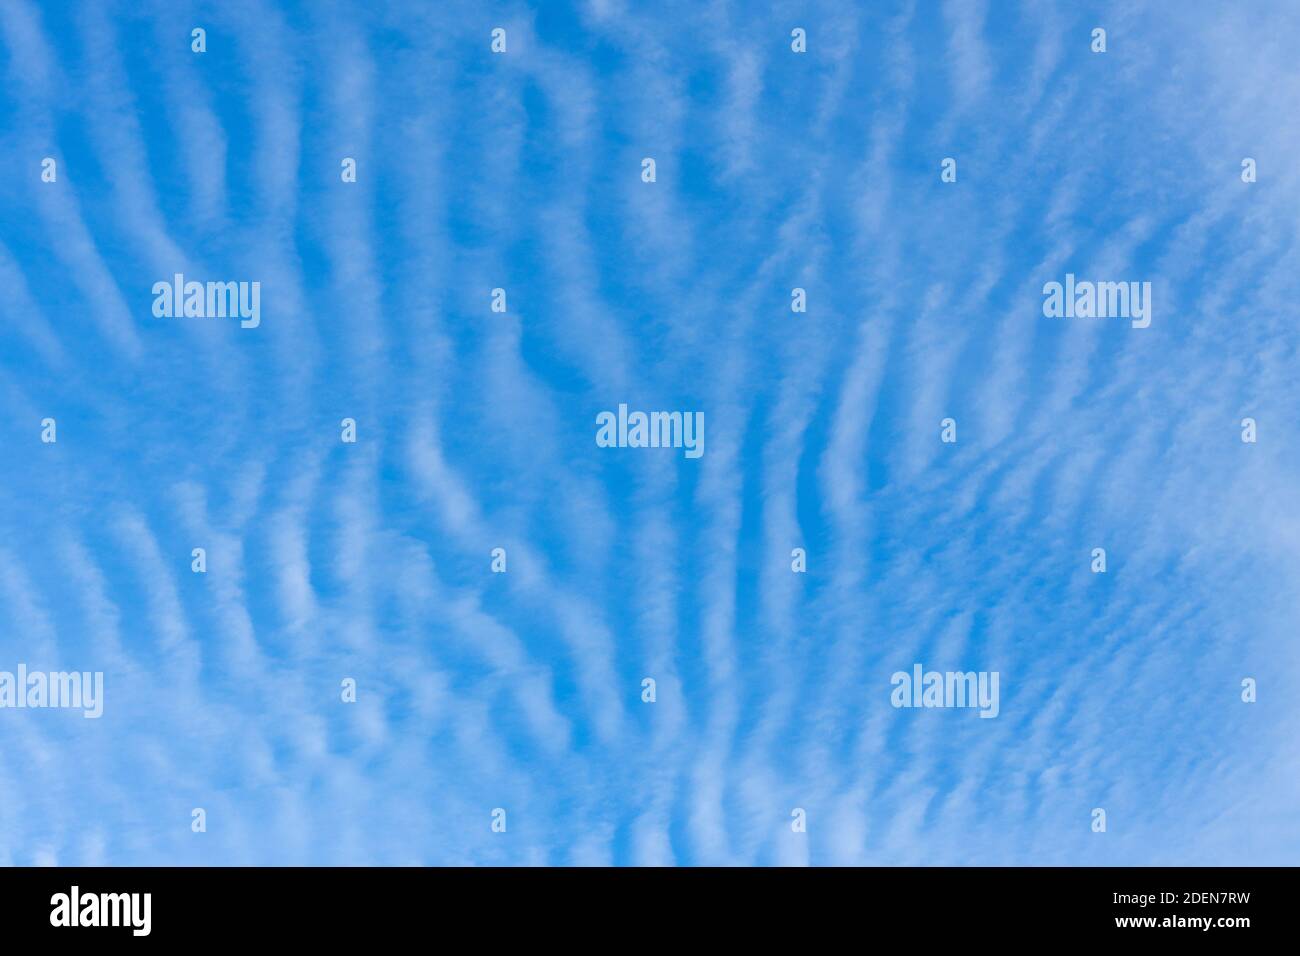 Un ciel bleu de maquereau avec des nuages de Cirrocumulus, blancs typiques, ondulés et ondulés, révélateurs de conditions météorologiques changeantes, au-dessus de Surrey, sud-est en Banque D'Images